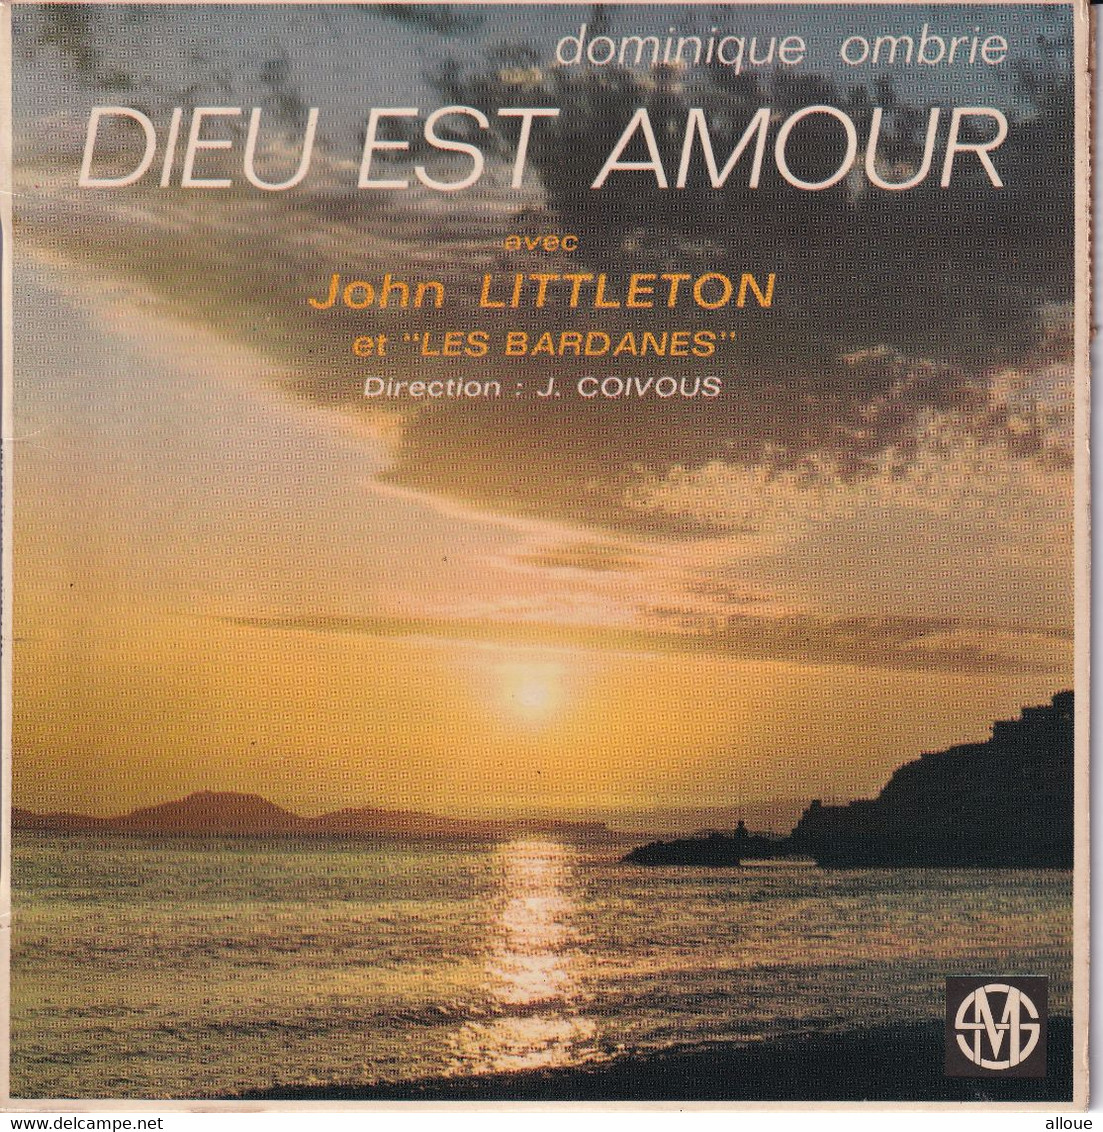 JOHN LITTLETON (DEDICACE AU DOS)  - FR EP  - DIEU EST AMOUR + 4 - Canciones Religiosas Y  Gospels